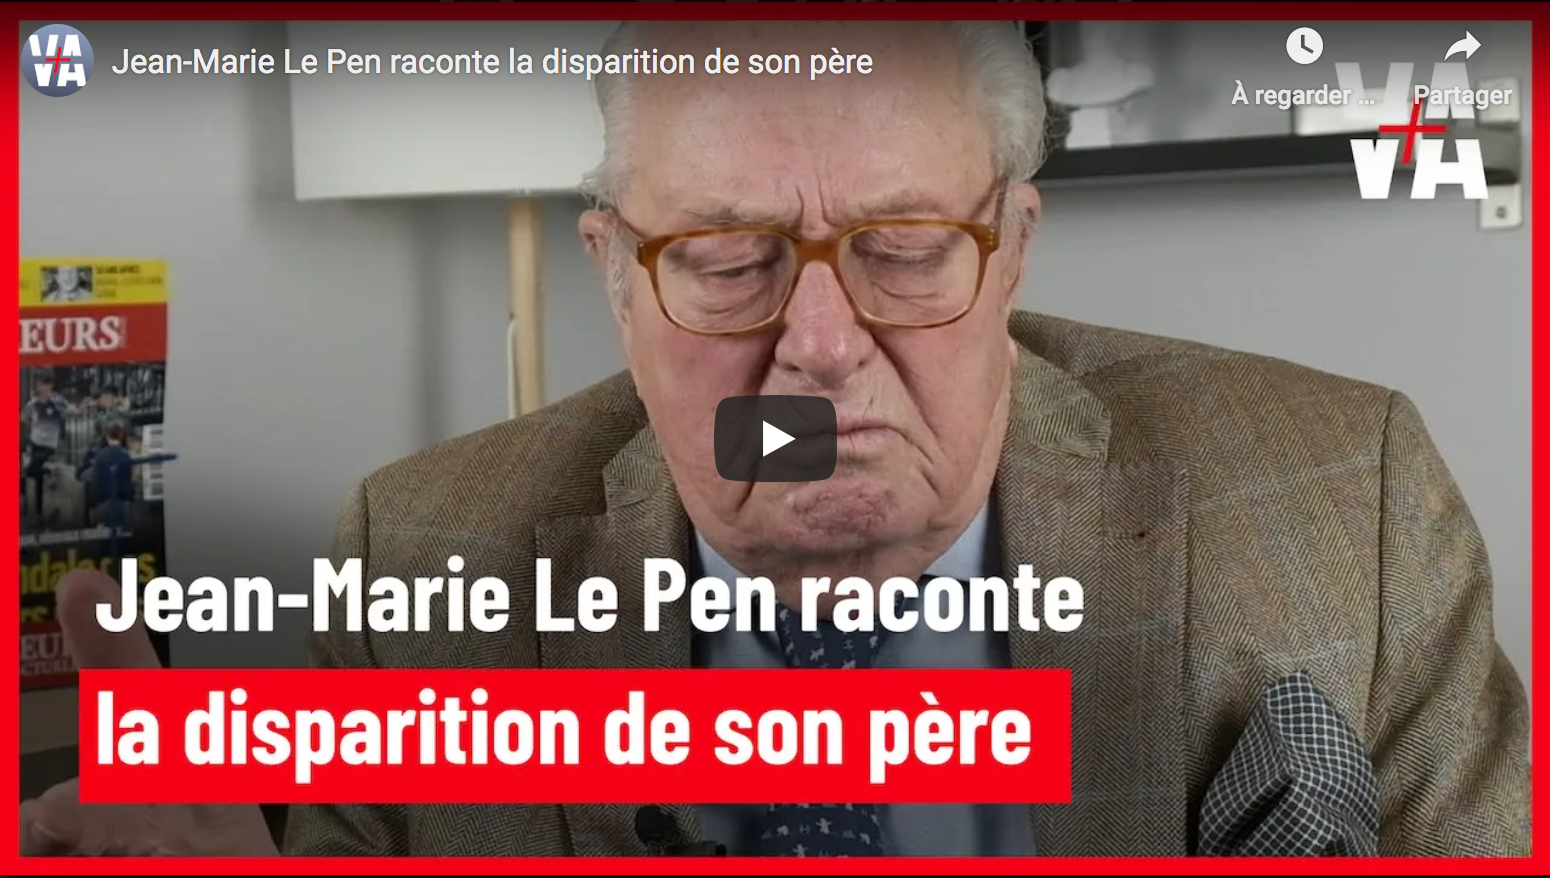 Jean-Marie Le Pen raconte la disparition de son père (VIDÉO)